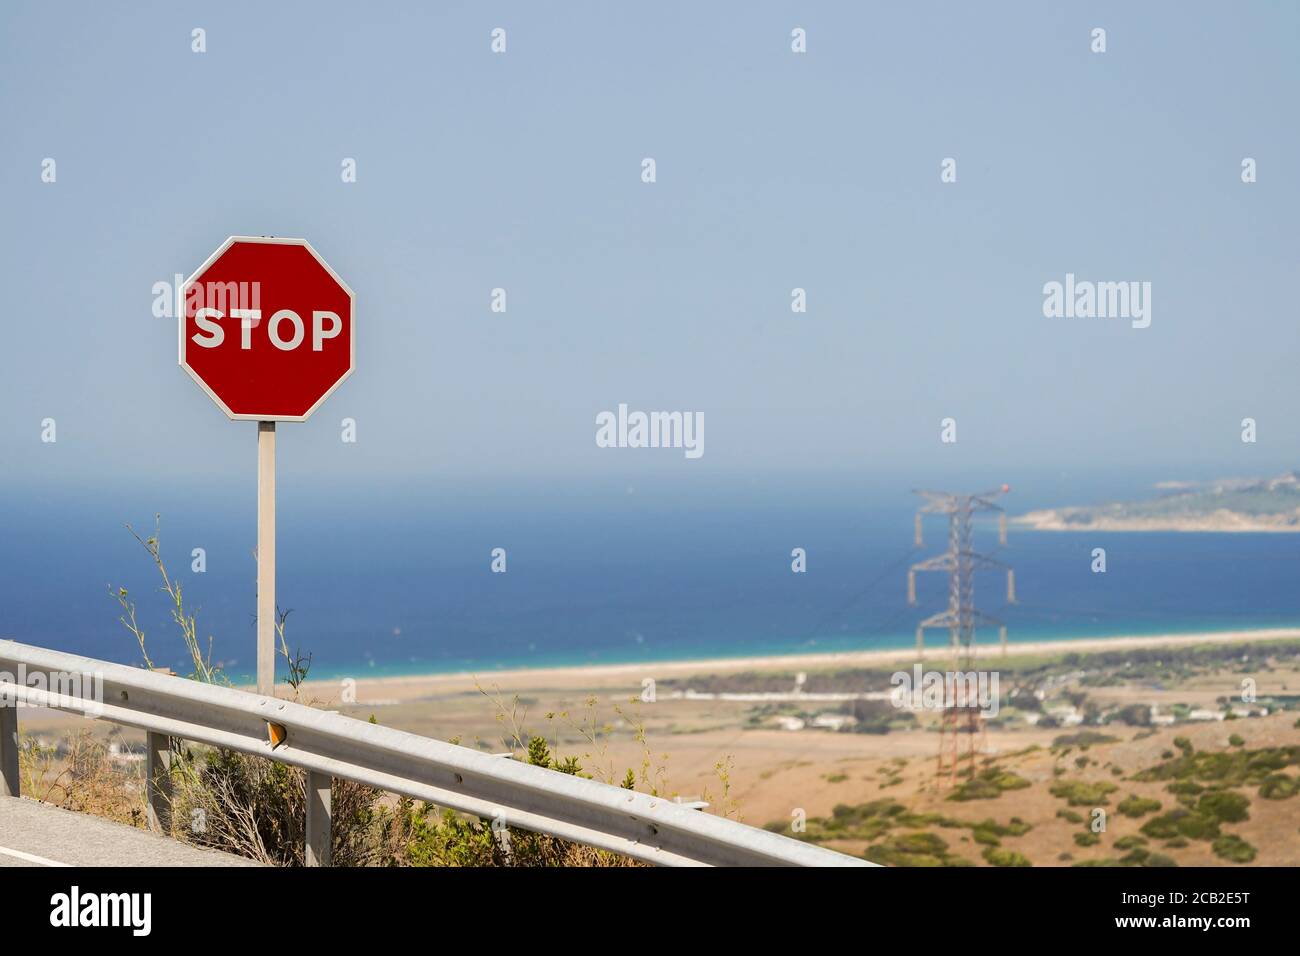 Biển báo Stop trên đường Tây Ban Nha, đường N-340, bãi biển Tarifa: Bạn yêu du lịch và đang tìm kiếm những địa điểm đẹp để tham quan? Biển báo Stop trên đường Tây Ban Nha là một trong những địa điểm nên ghé thăm. Với màu đỏ tươi rực rỡ và vị trí đặc biệt ở bãi biển Tarifa, biển báo này sẽ giúp bạn có một bức ảnh độc đáo và ấn tượng. Hãy xem hình ảnh để khám phá thêm sự tuyệt vời của chúng.